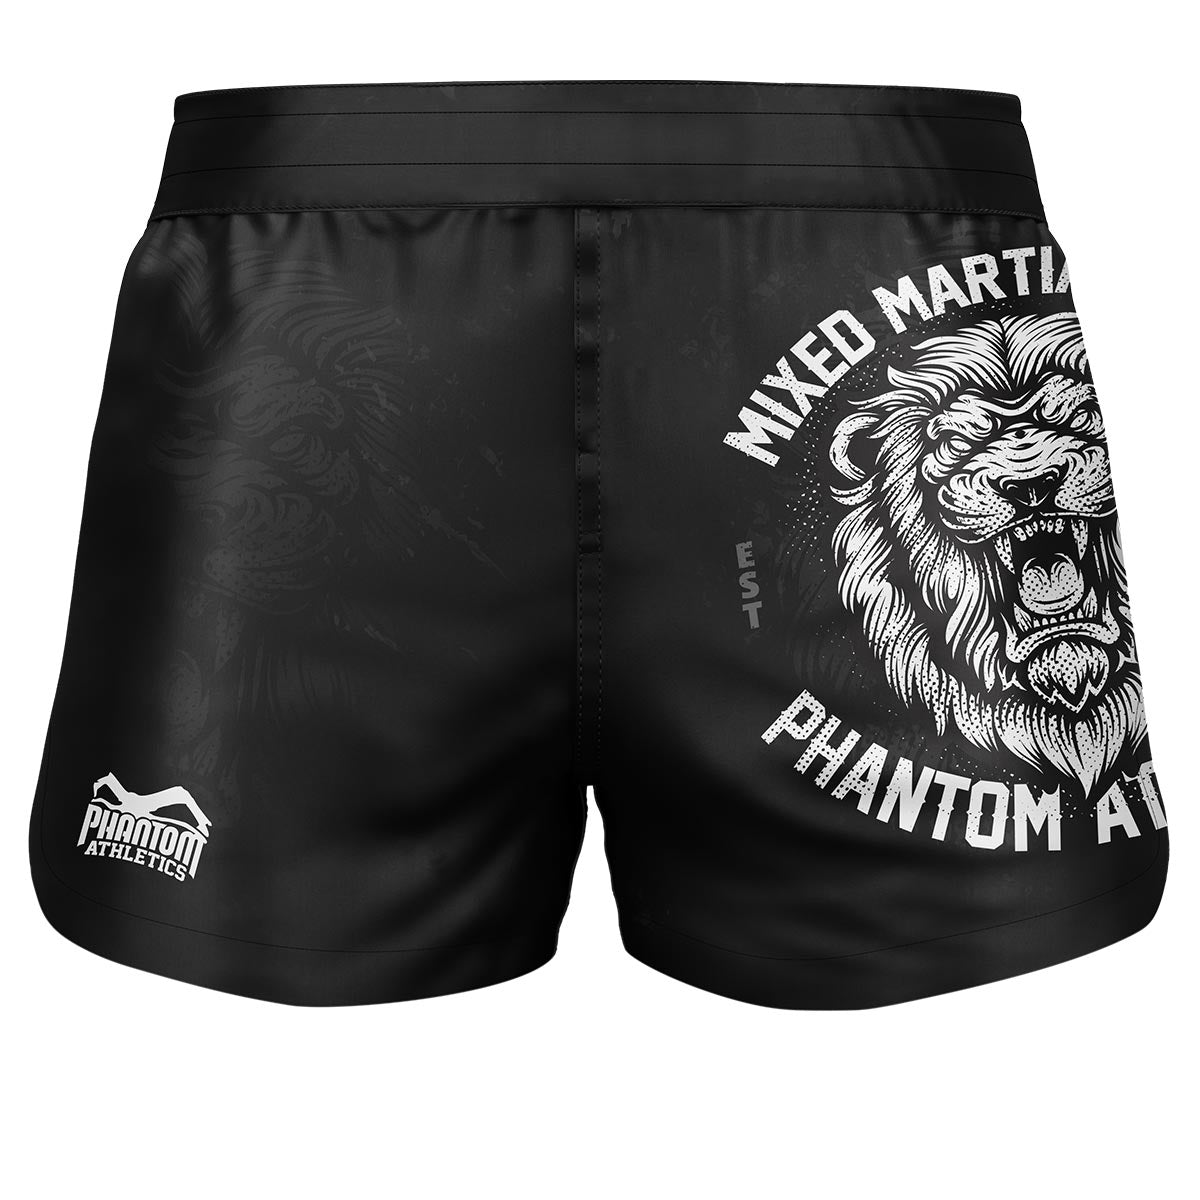 Phantom Fightshorts Fusion 2v1. Špičkové šortky pre vaše bojové umenia. Ideálne pre MMA, Muay Thai, BJJ, wrestling a ďalšie. V čiernej farbe s dizajnom leva.